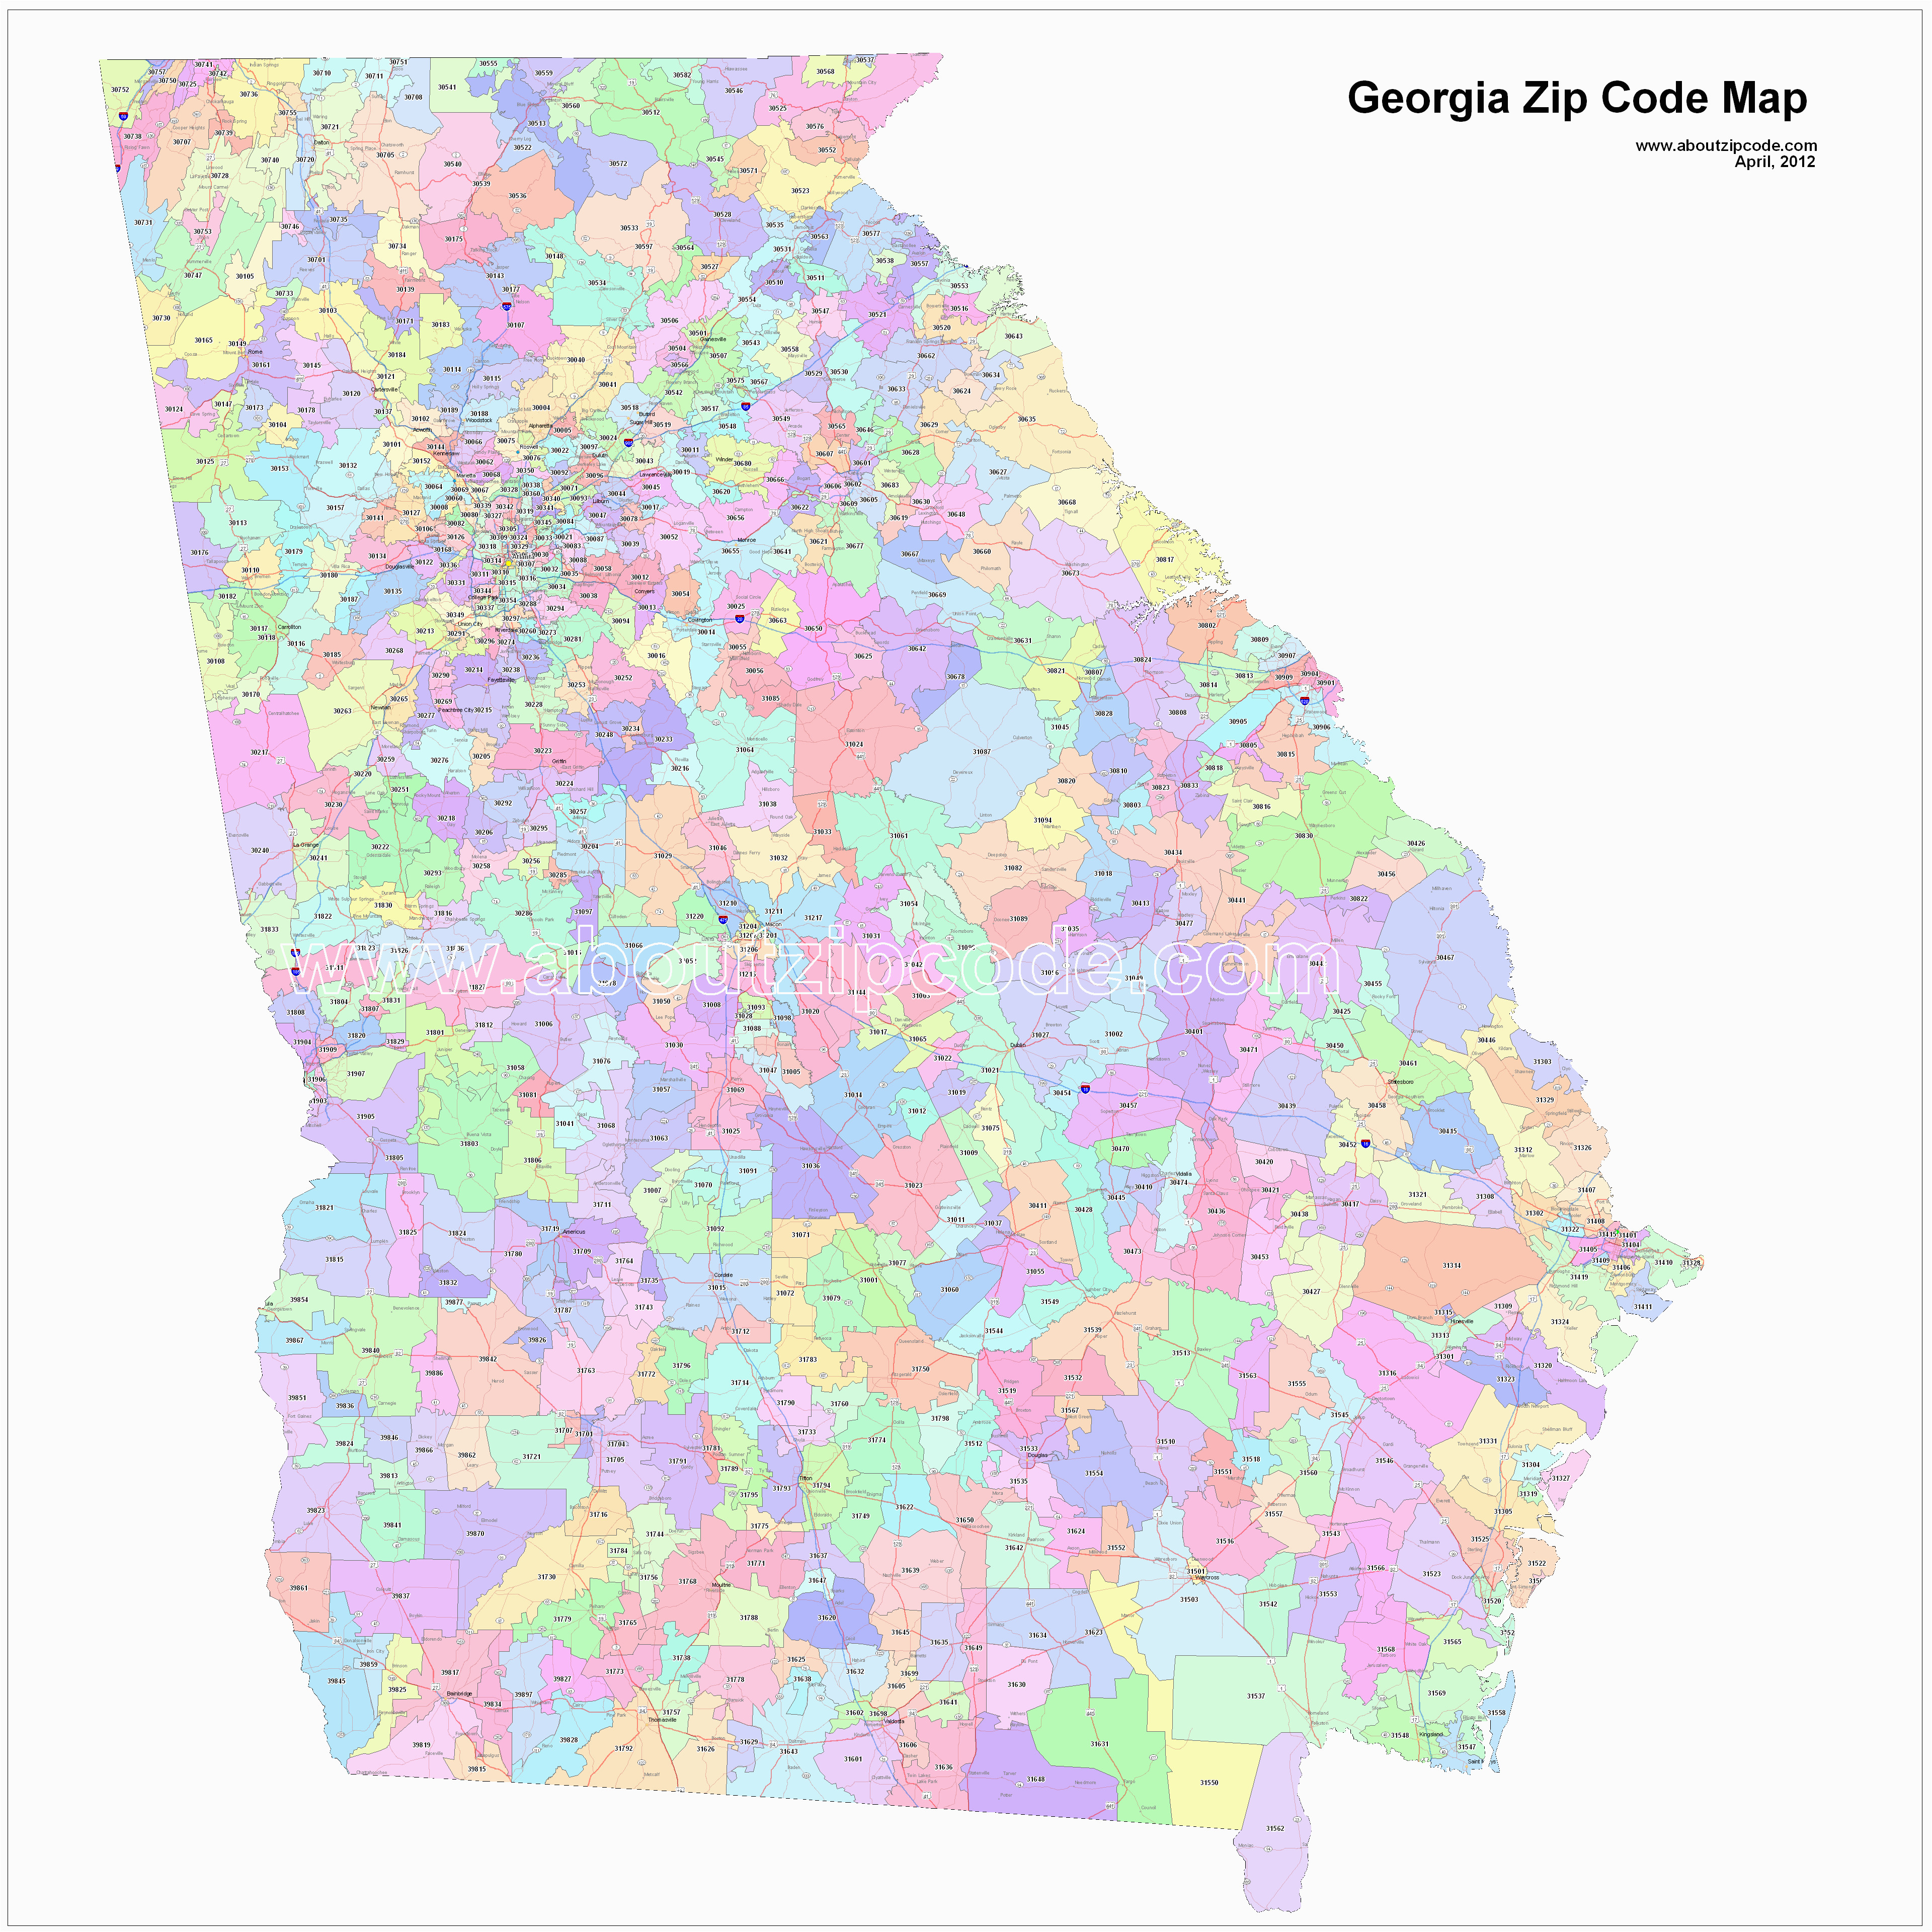 Augusta Georgia Zip Code Map Georgia Zip Code Maps Free Georgia Zip Code Maps